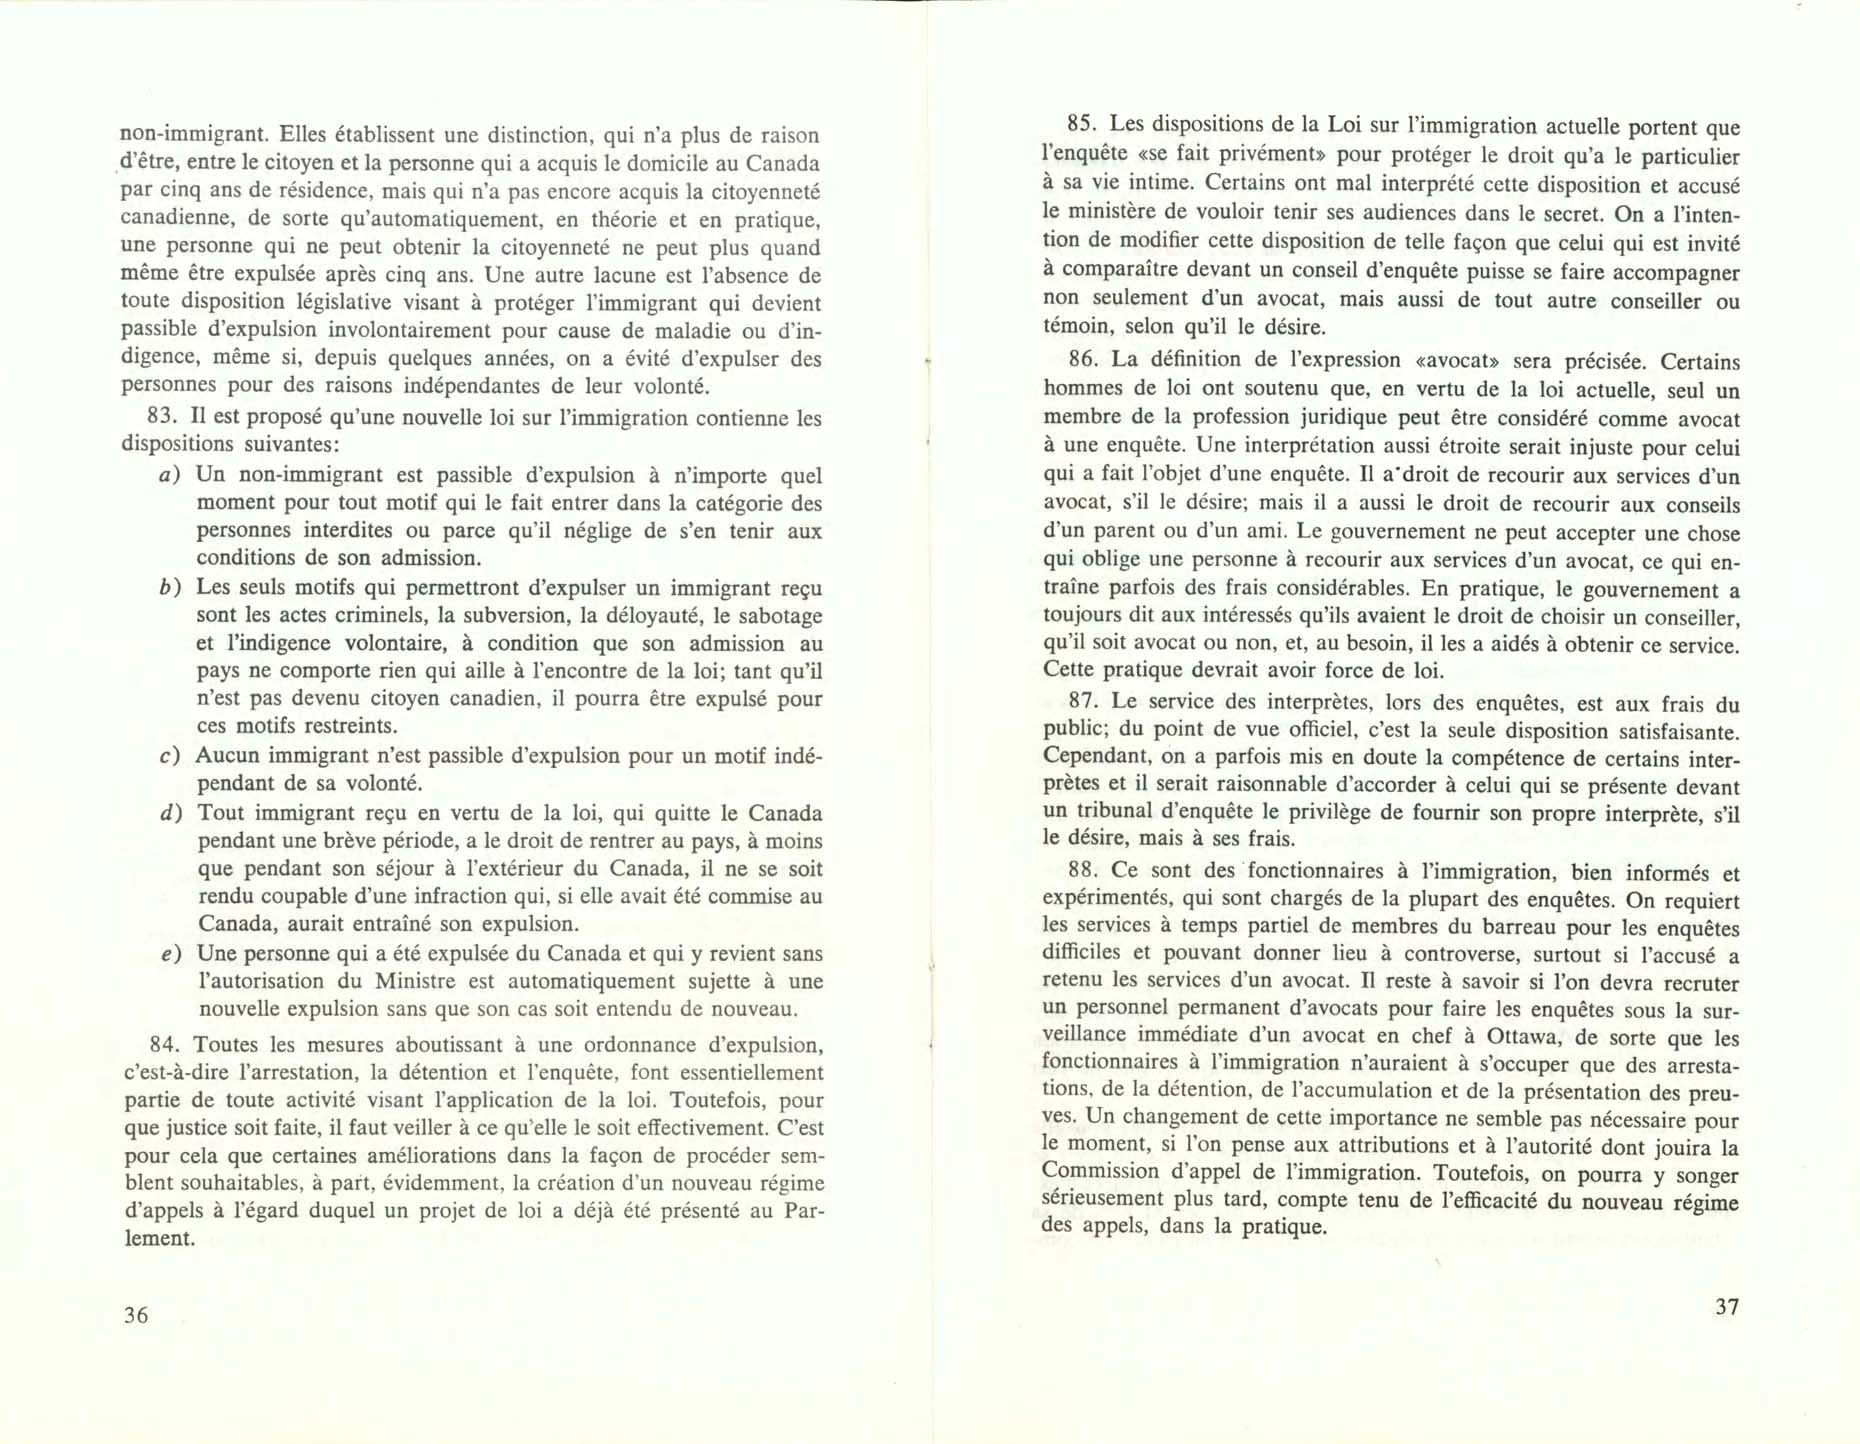 Page 36, 37 Livre Blanc sur l’immigration, 1966